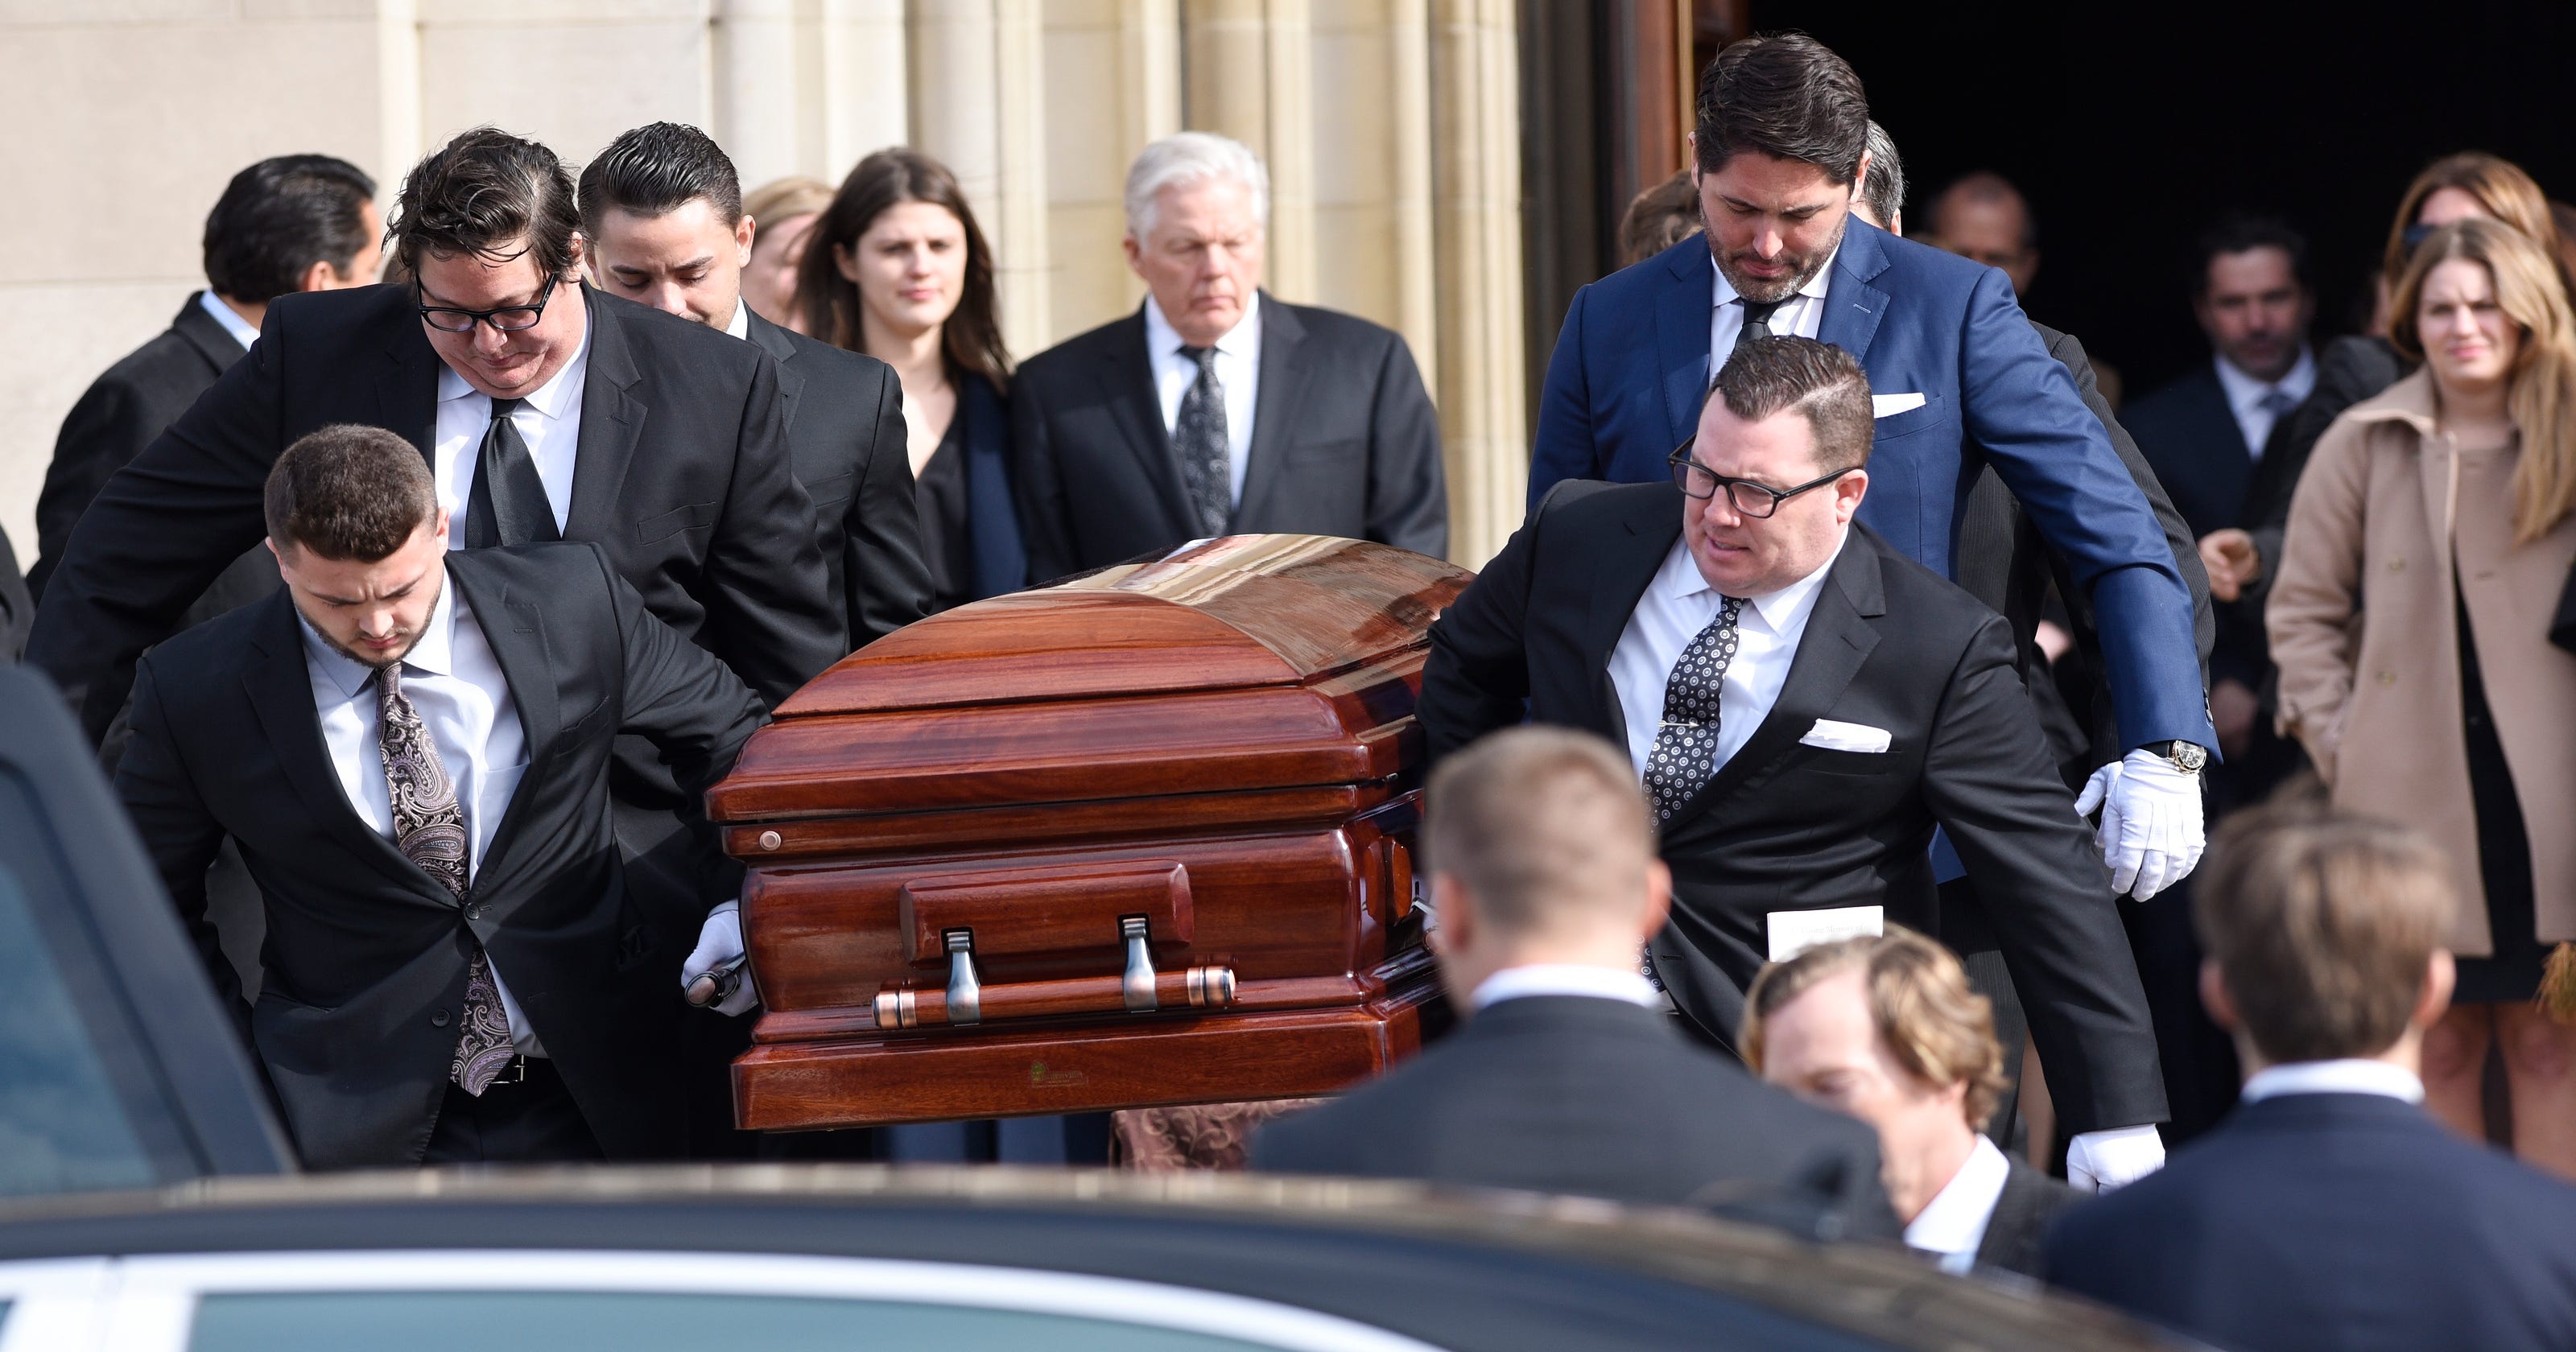 Funeral held for Art Van founder